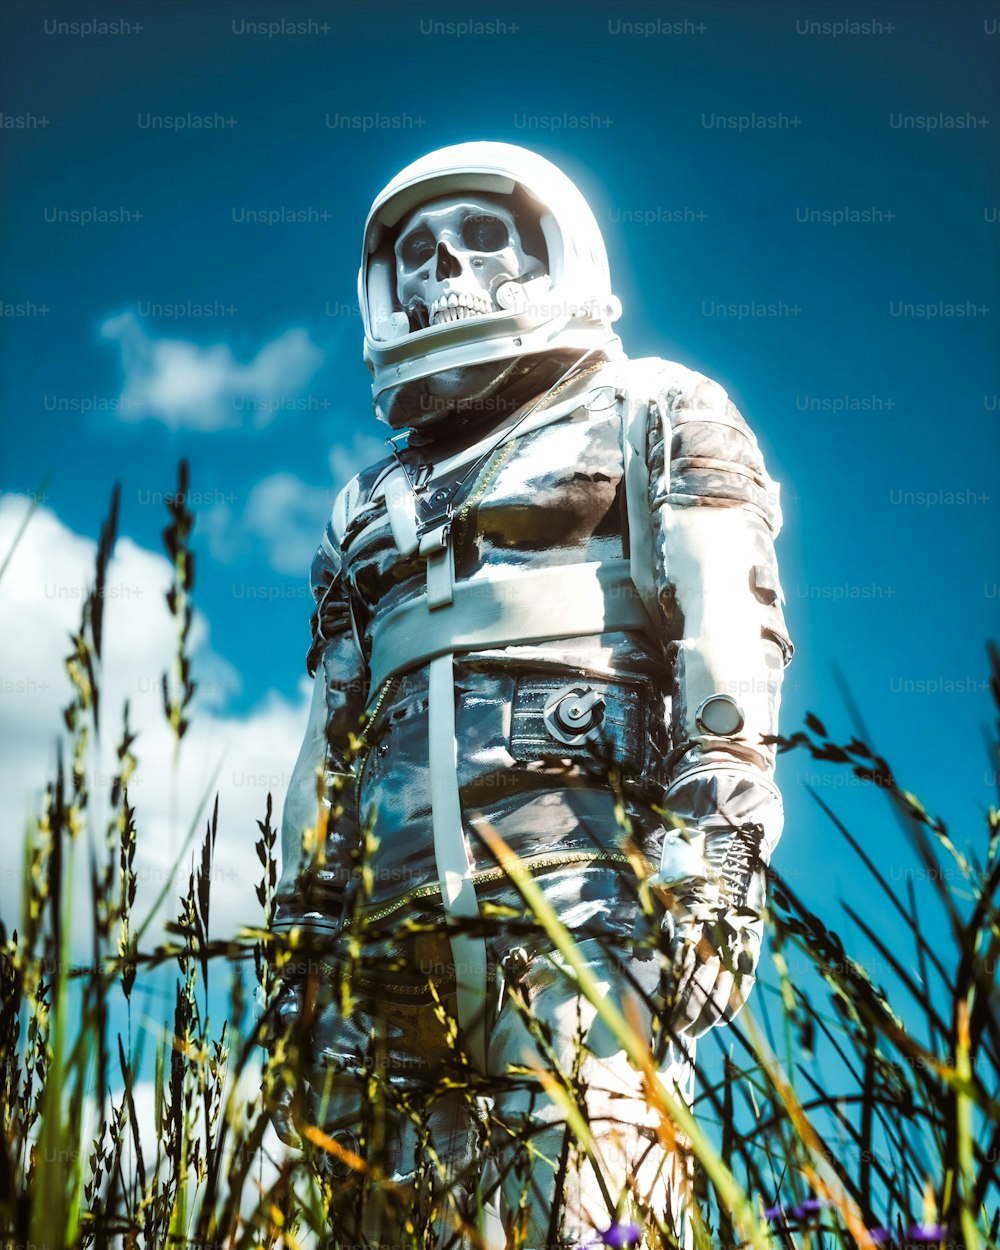 Un homme en combinaison spatiale debout dans les hautes herbes